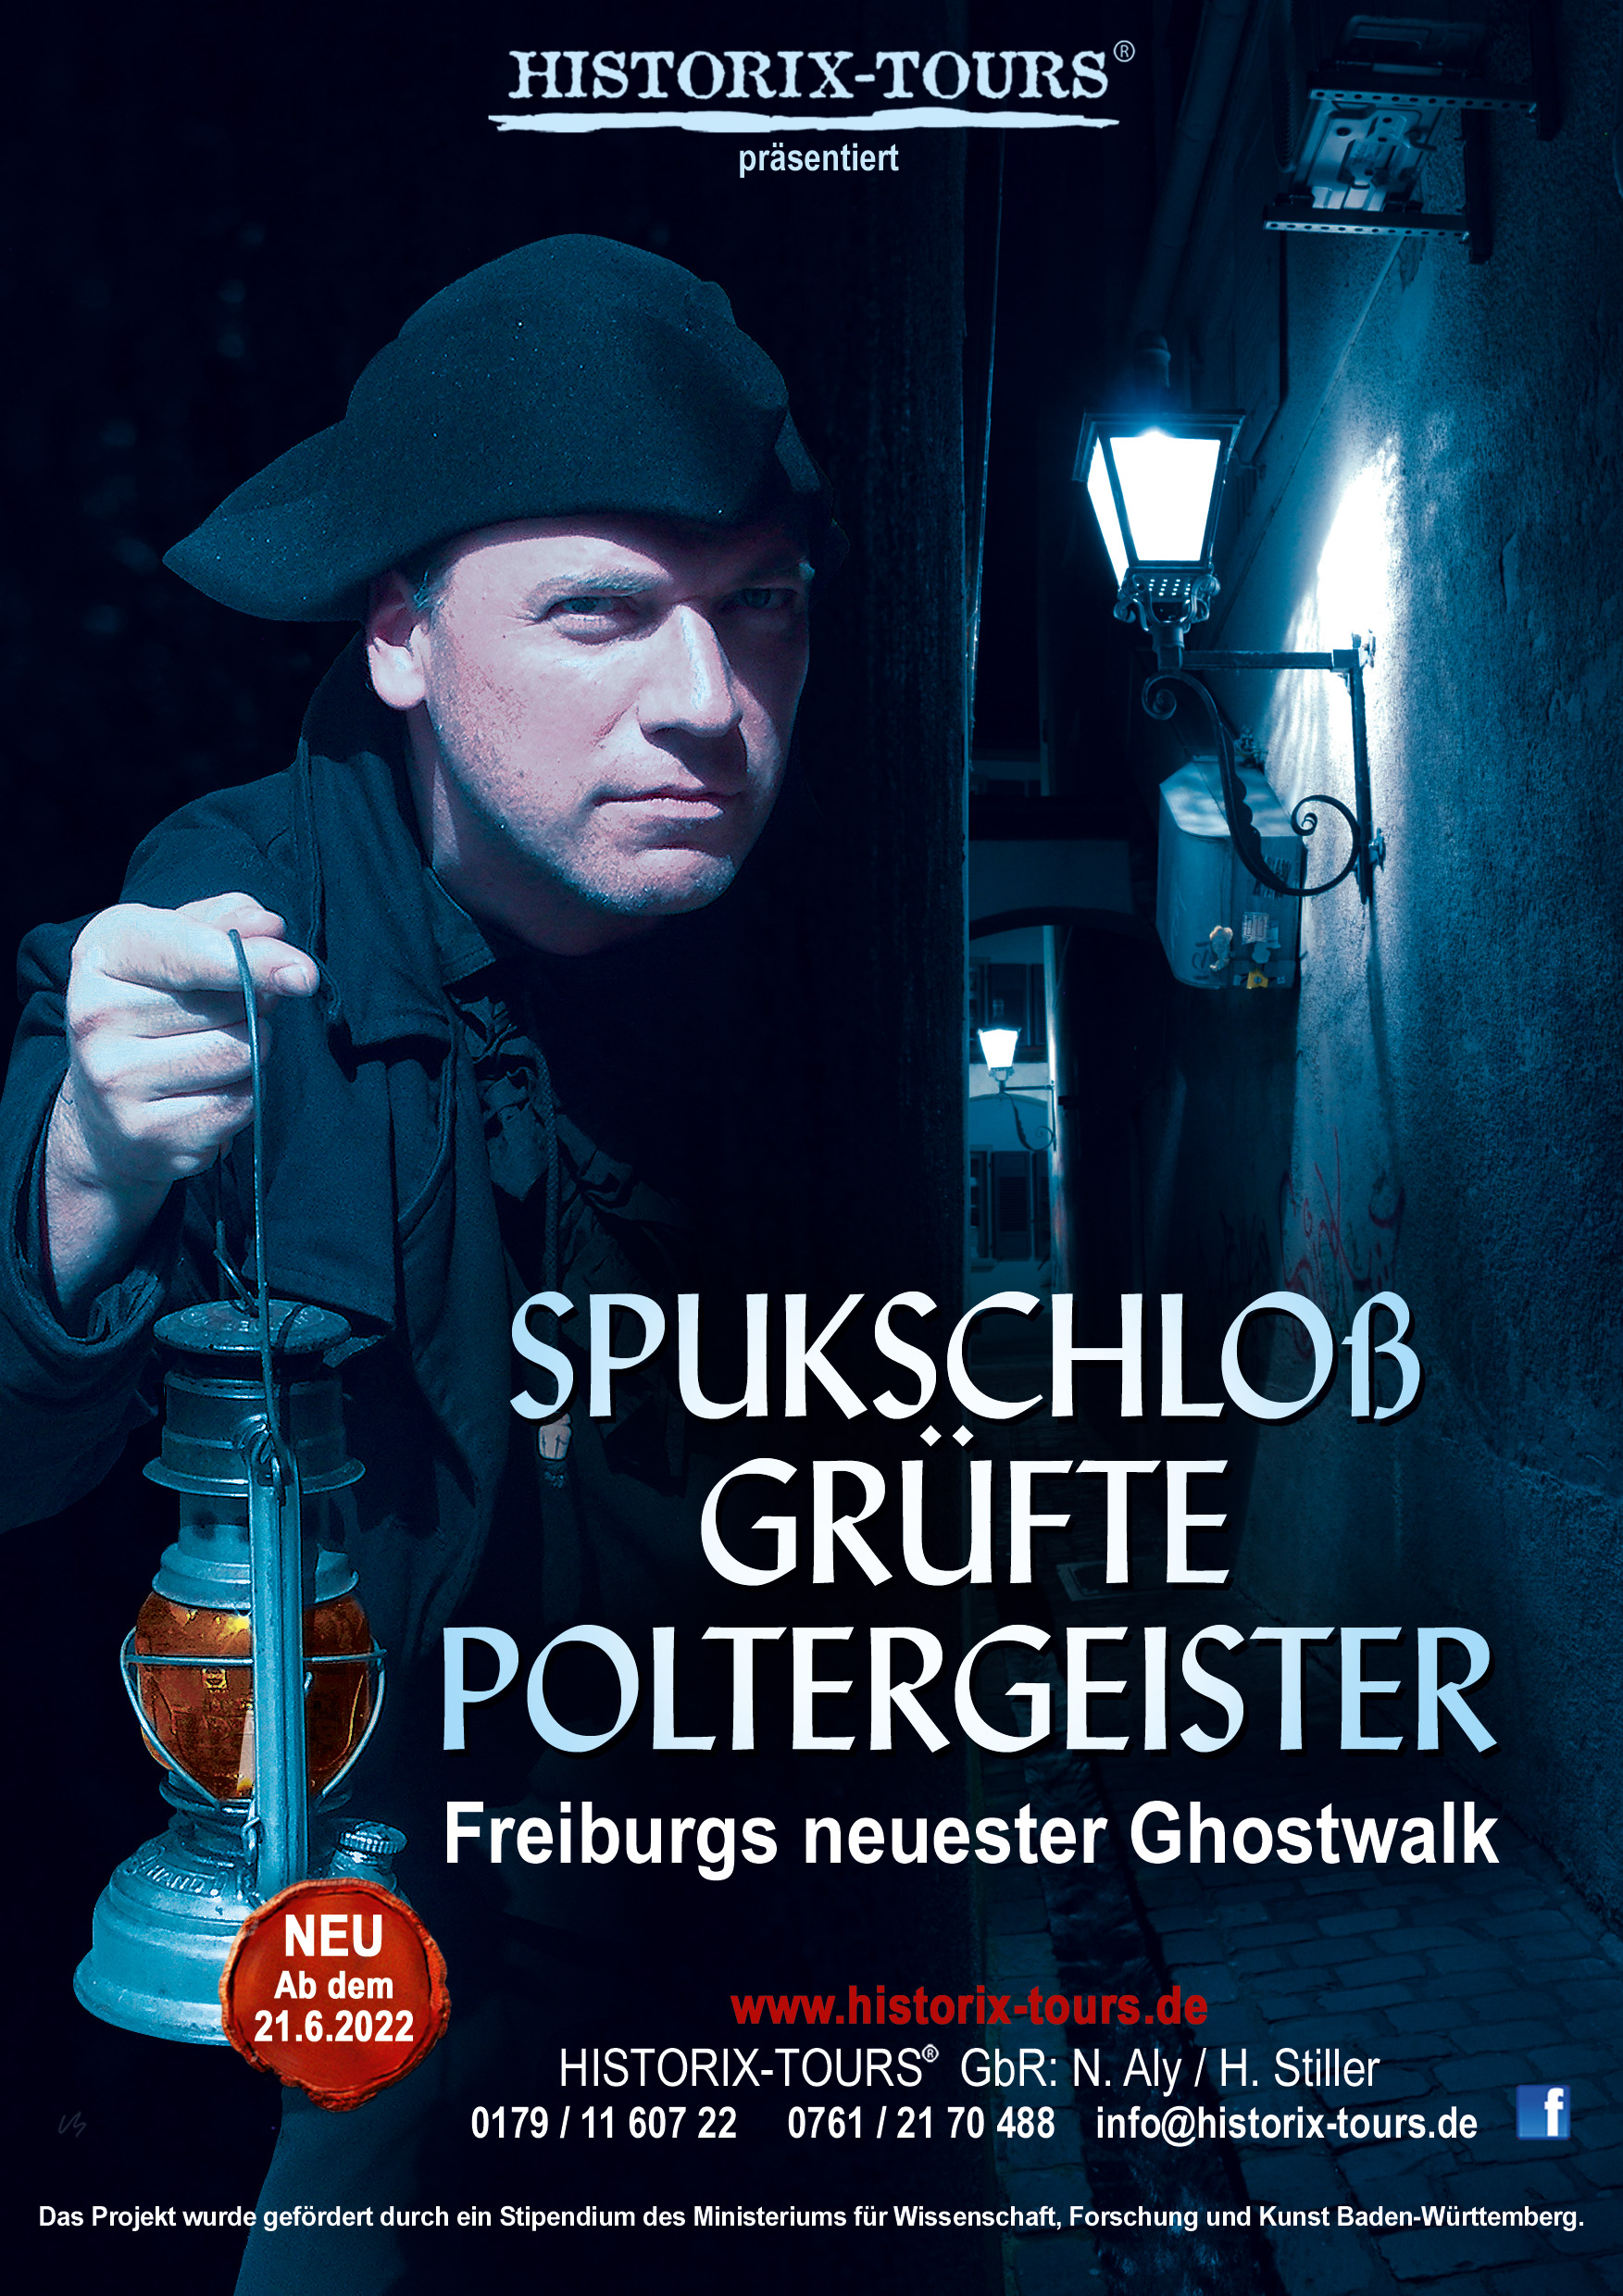 "Spukschloß, Grüfte, Poltergeister" - Ghostwalk zu paranormalen Fällen in Freiburg (ohne Anmeldung möglich)